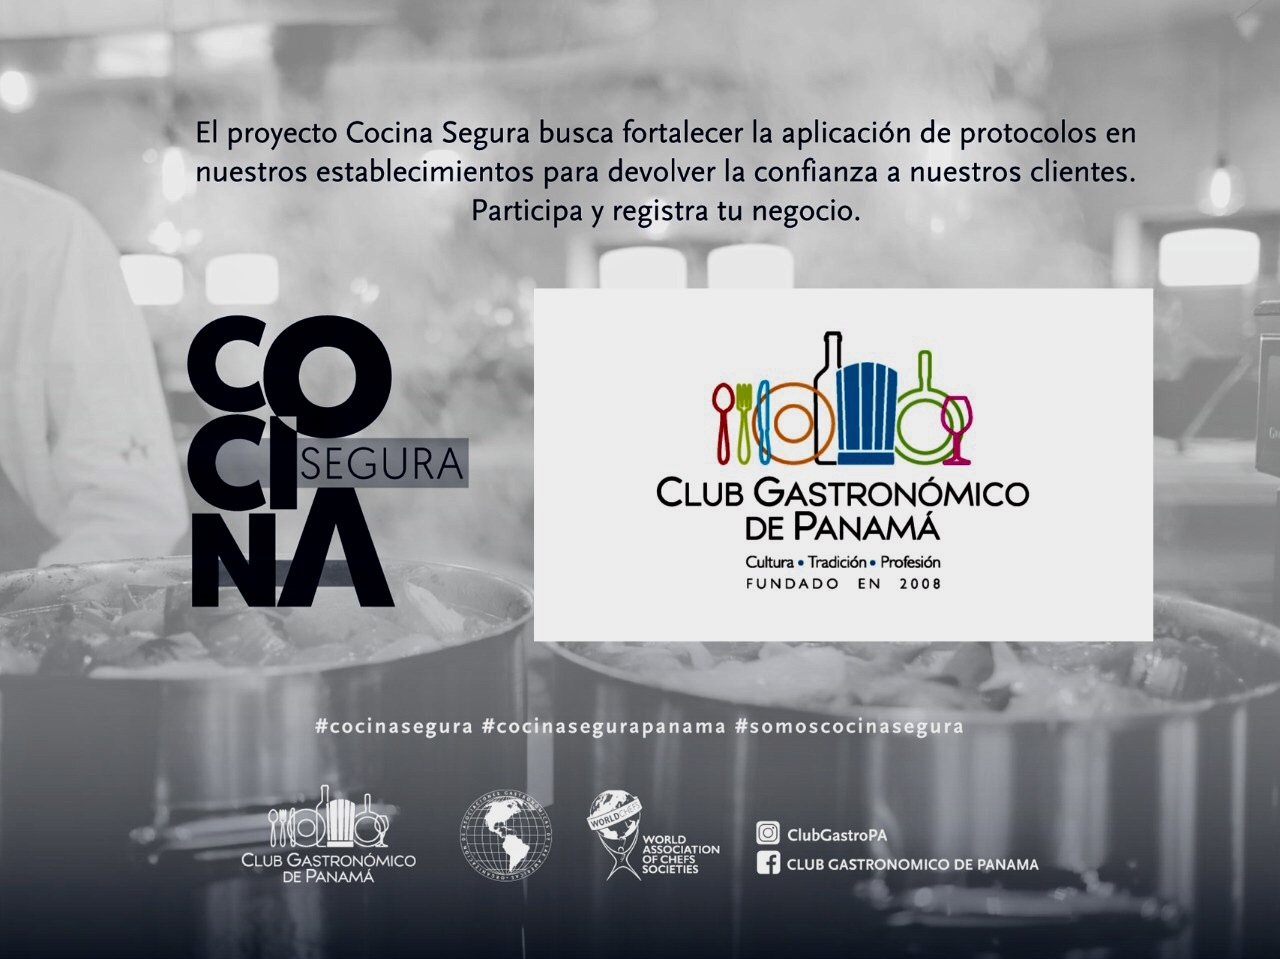 Club Gastronómico De Panama